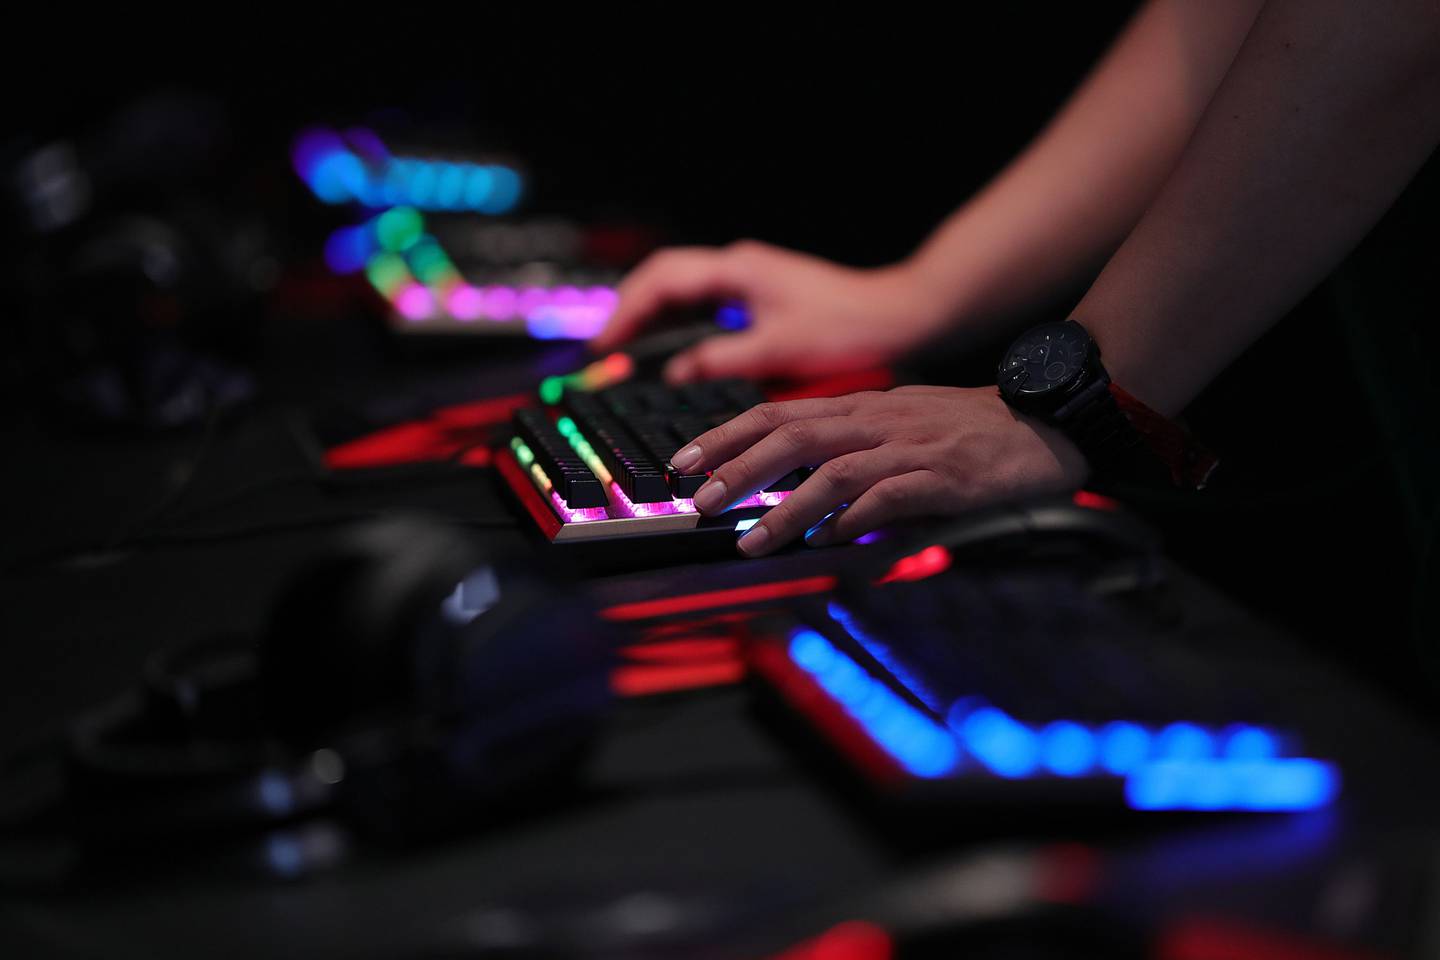 Un jugador utiliza un teclado iluminado para jugar a un juego de ordenador en el evento de la industria del juego Gamescom en Colonia, Alemania, el martes 21 de agosto de 2018.dfd